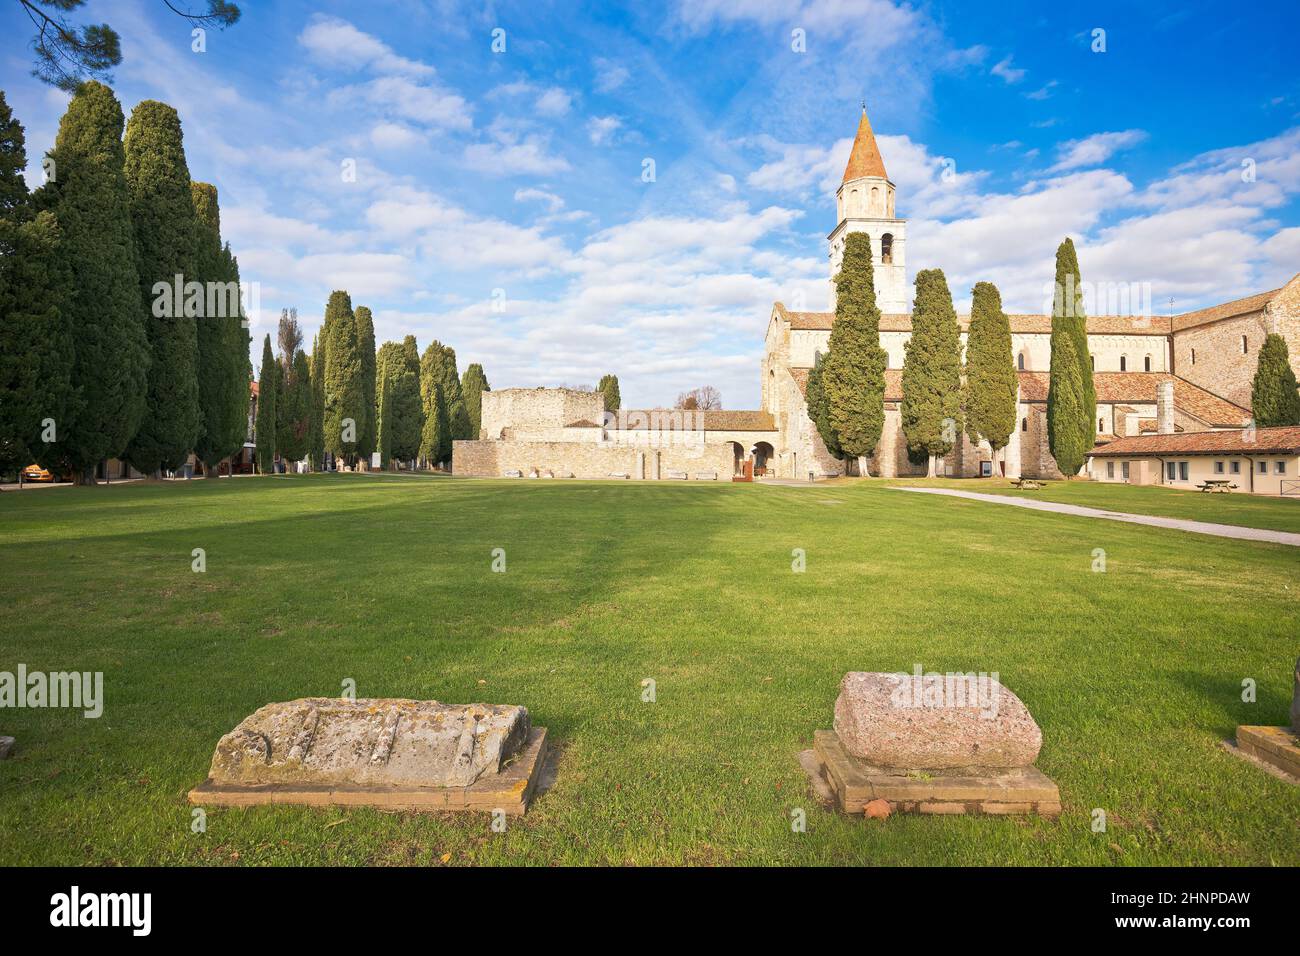 Basilica di Santa Maria Assunta in Aquileia, UNESCO world heritage site in Friuli Venezia Giulia Stock Photo